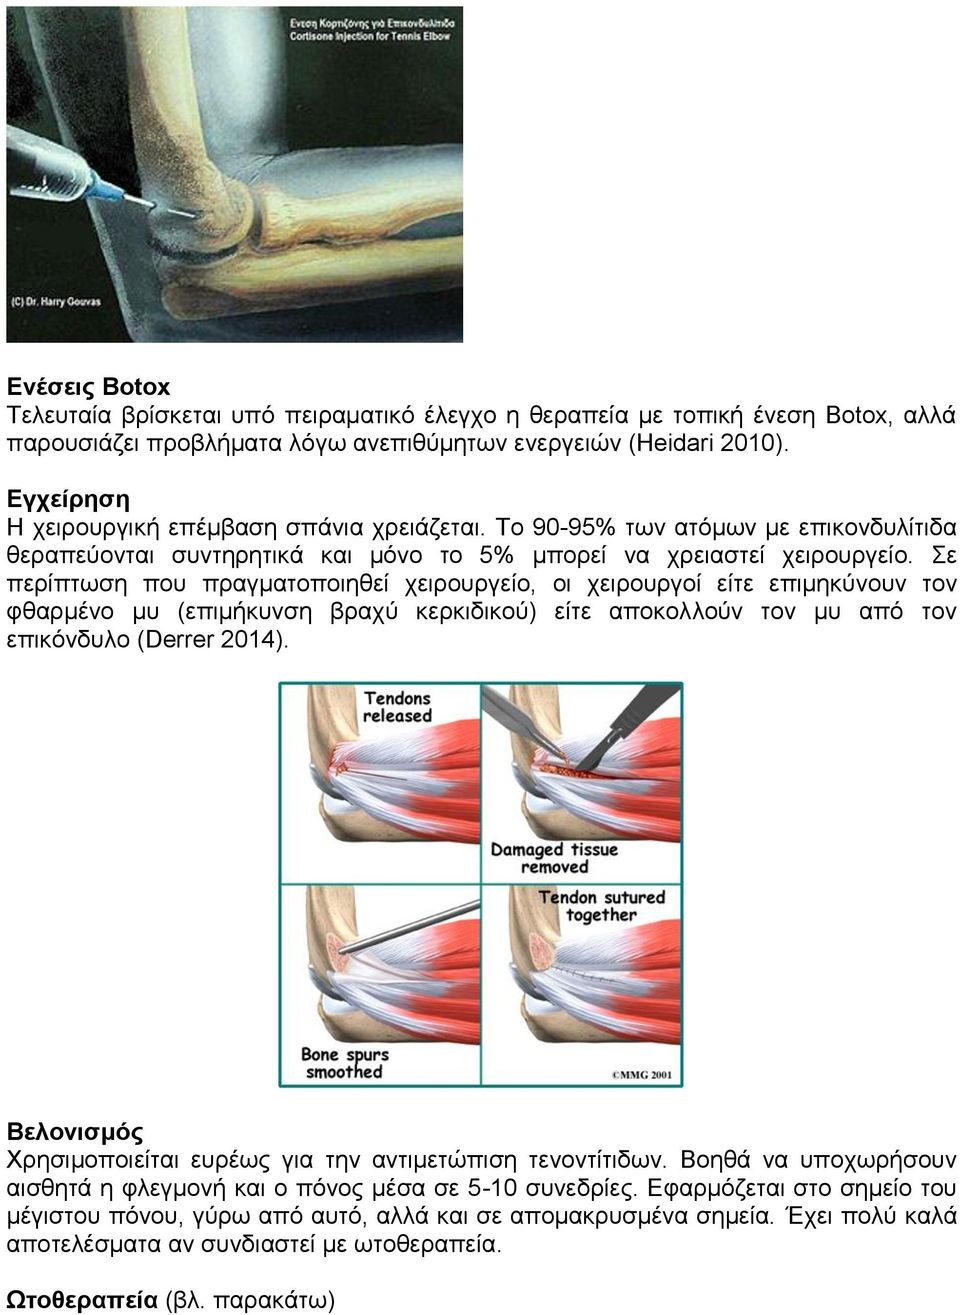 Σε περίπτωση που πραγματοποιηθεί χειρουργείο, οι χειρουργοί είτε επιμηκύνουν τον φθαρμένο μυ (επιμήκυνση βραχύ κερκιδικού) είτε αποκολλούν τον μυ από τον επικόνδυλο (Derrer 2014).